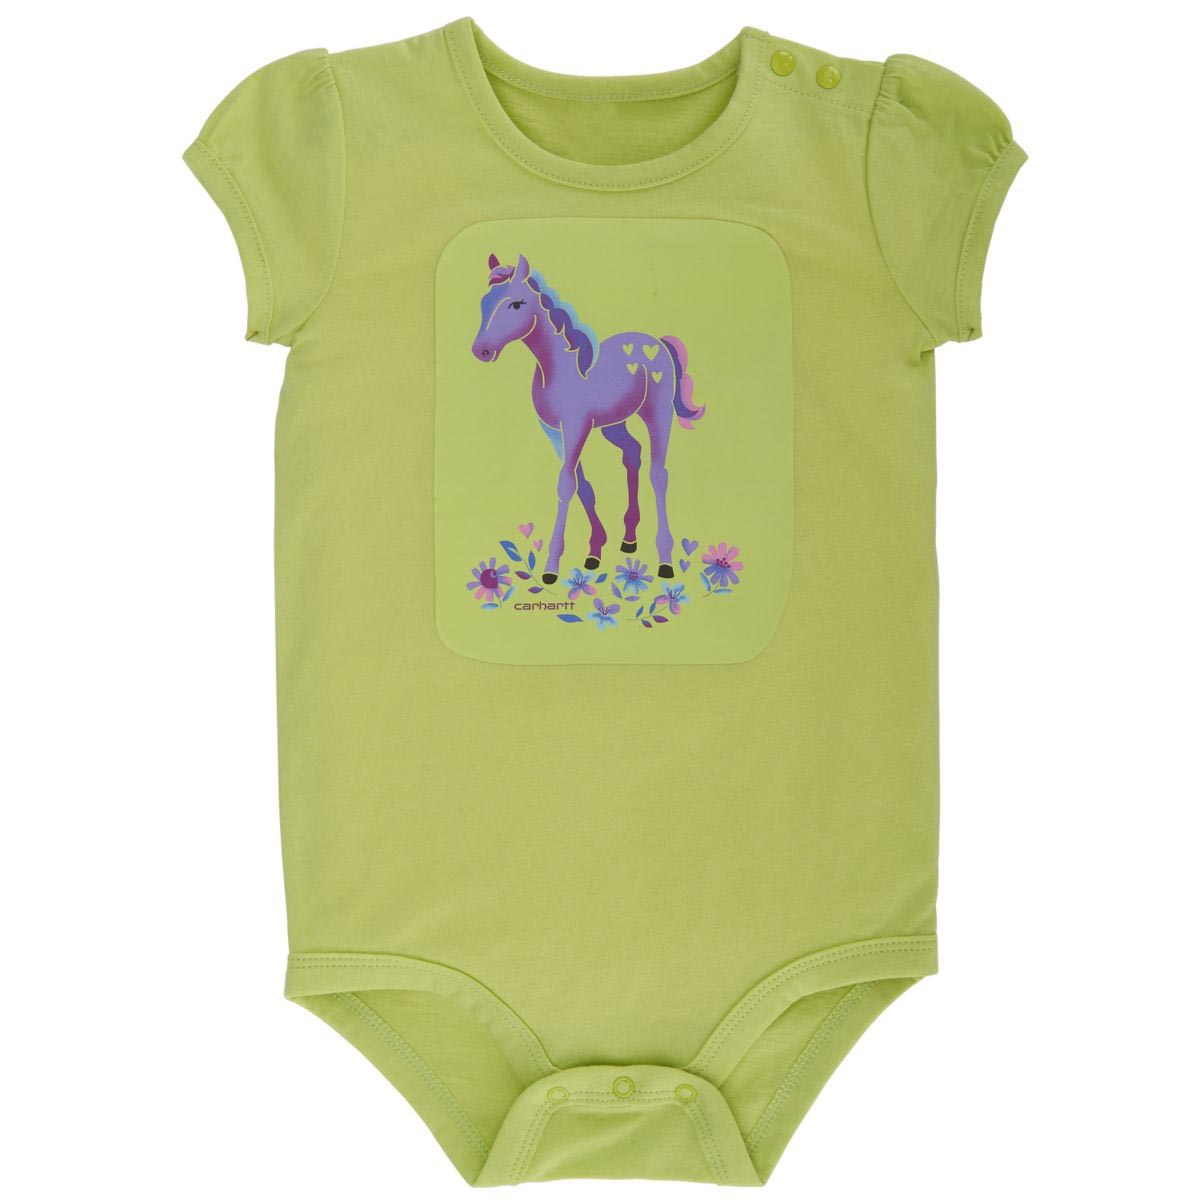 Carhartt Infant Girls' I Heart Horses Bodyshirt